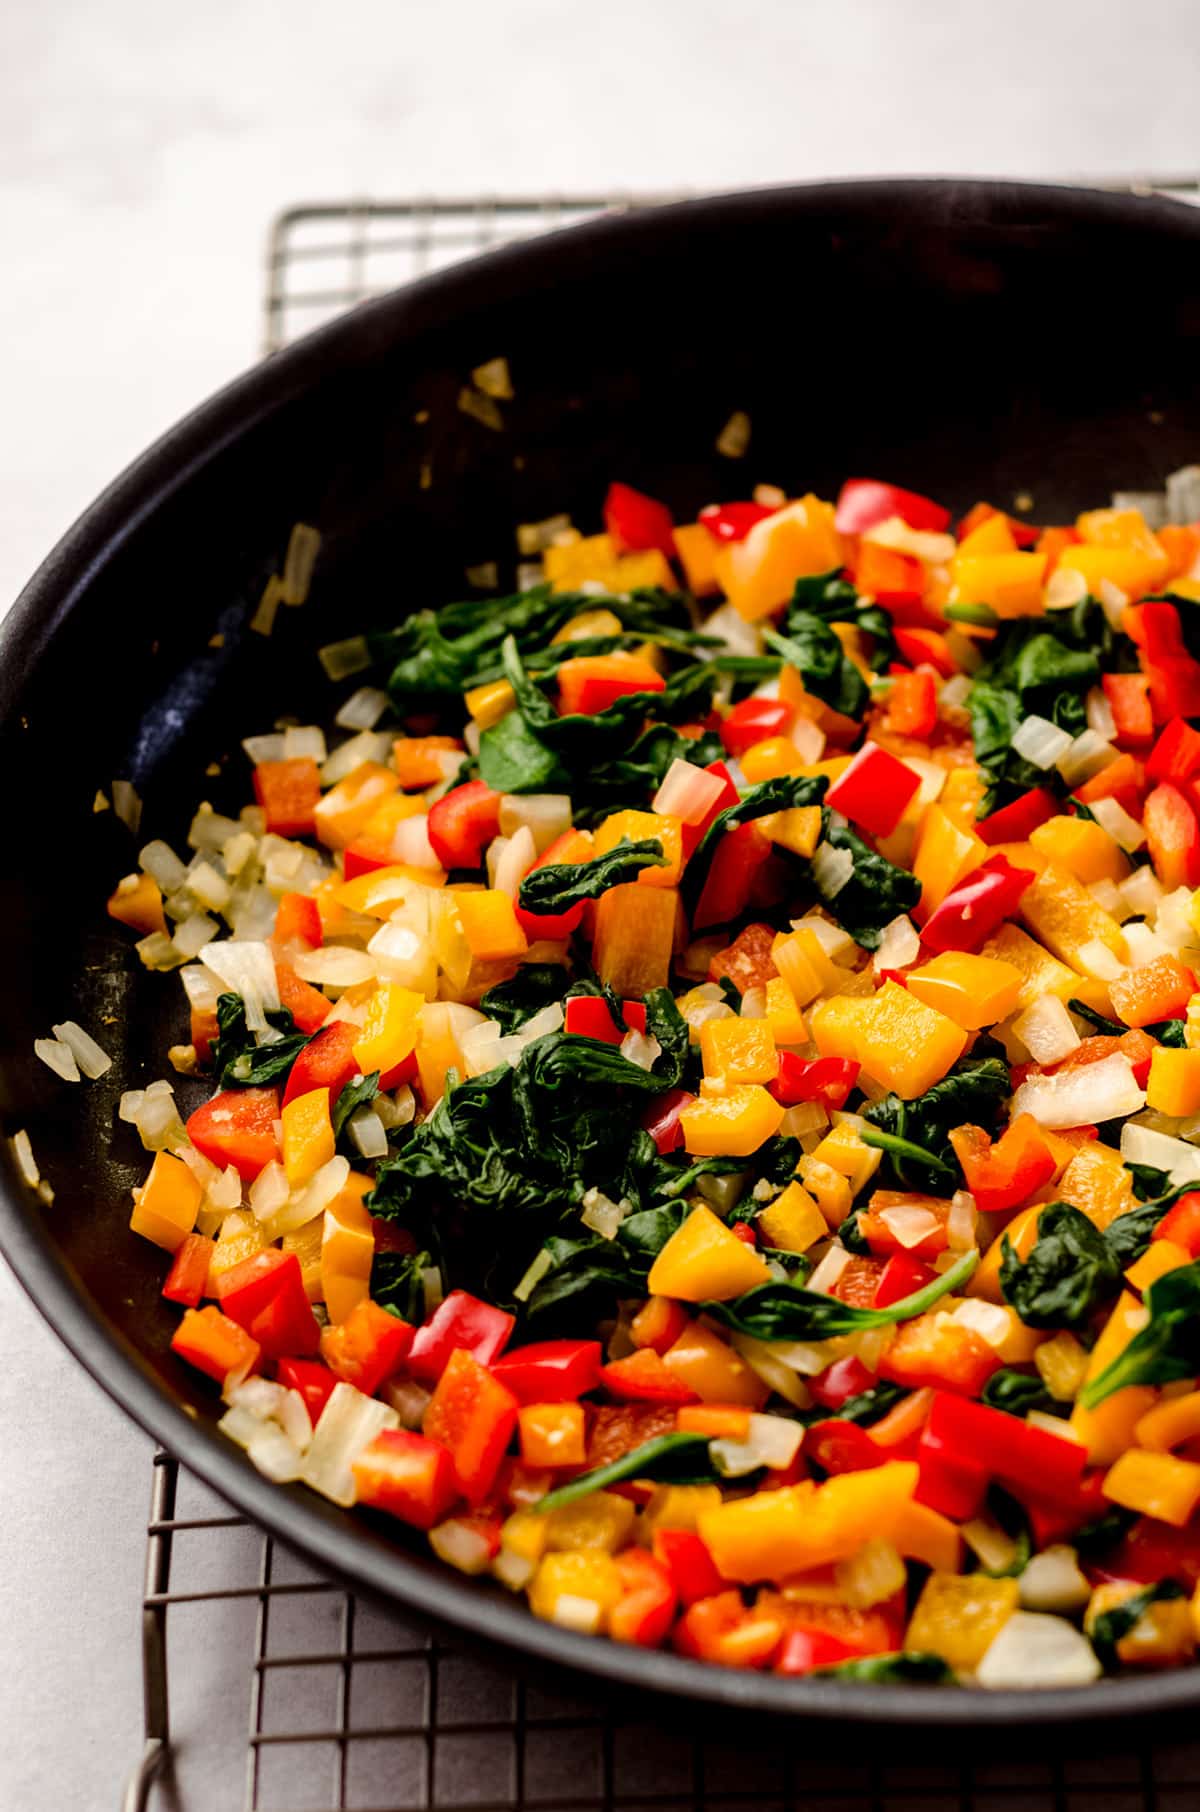 sauteed veggies in a saucepan